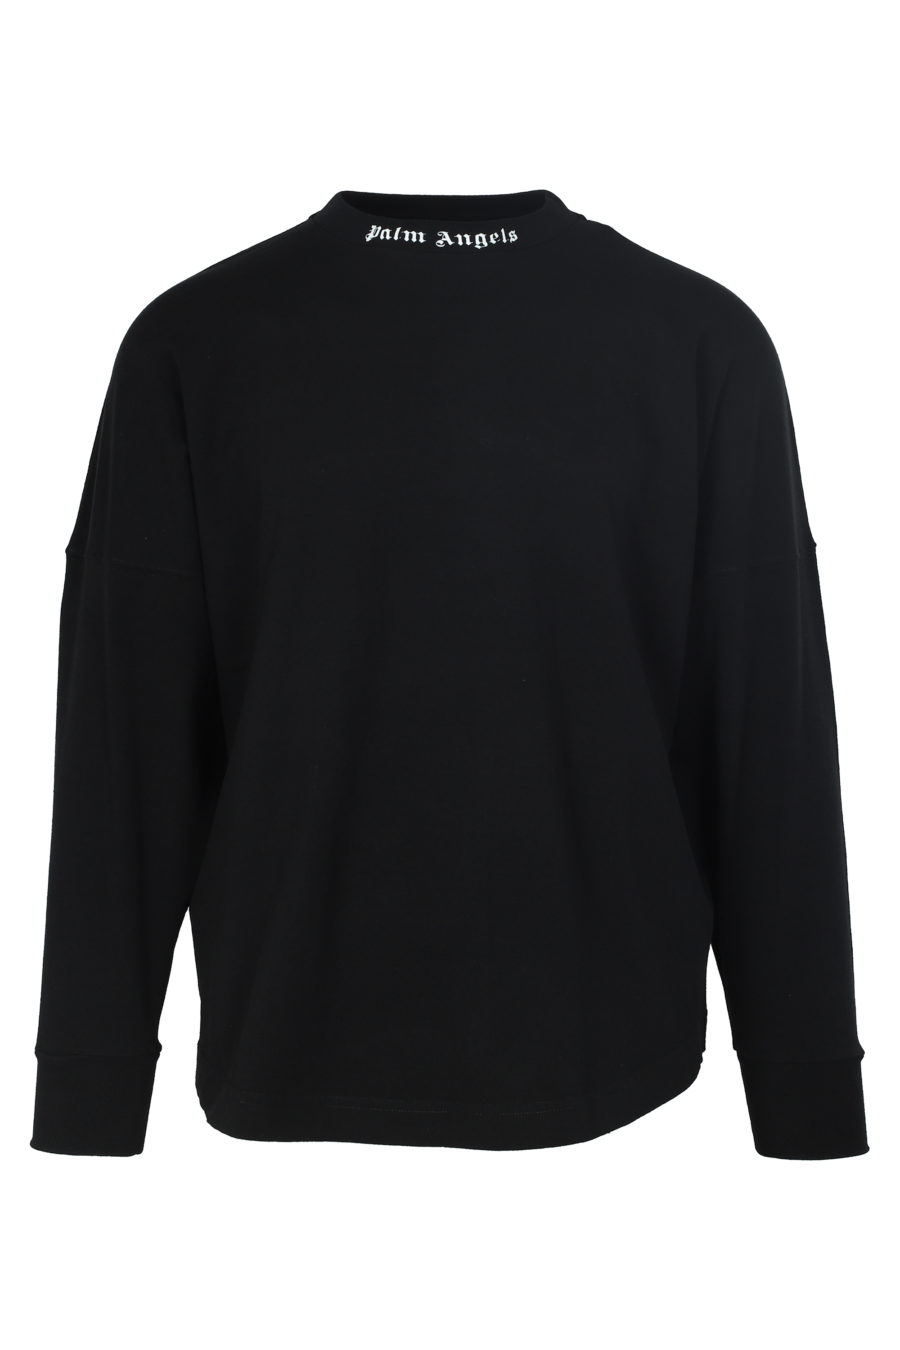 Camiseta negra de manga larga con logo espalda - IMG 6018